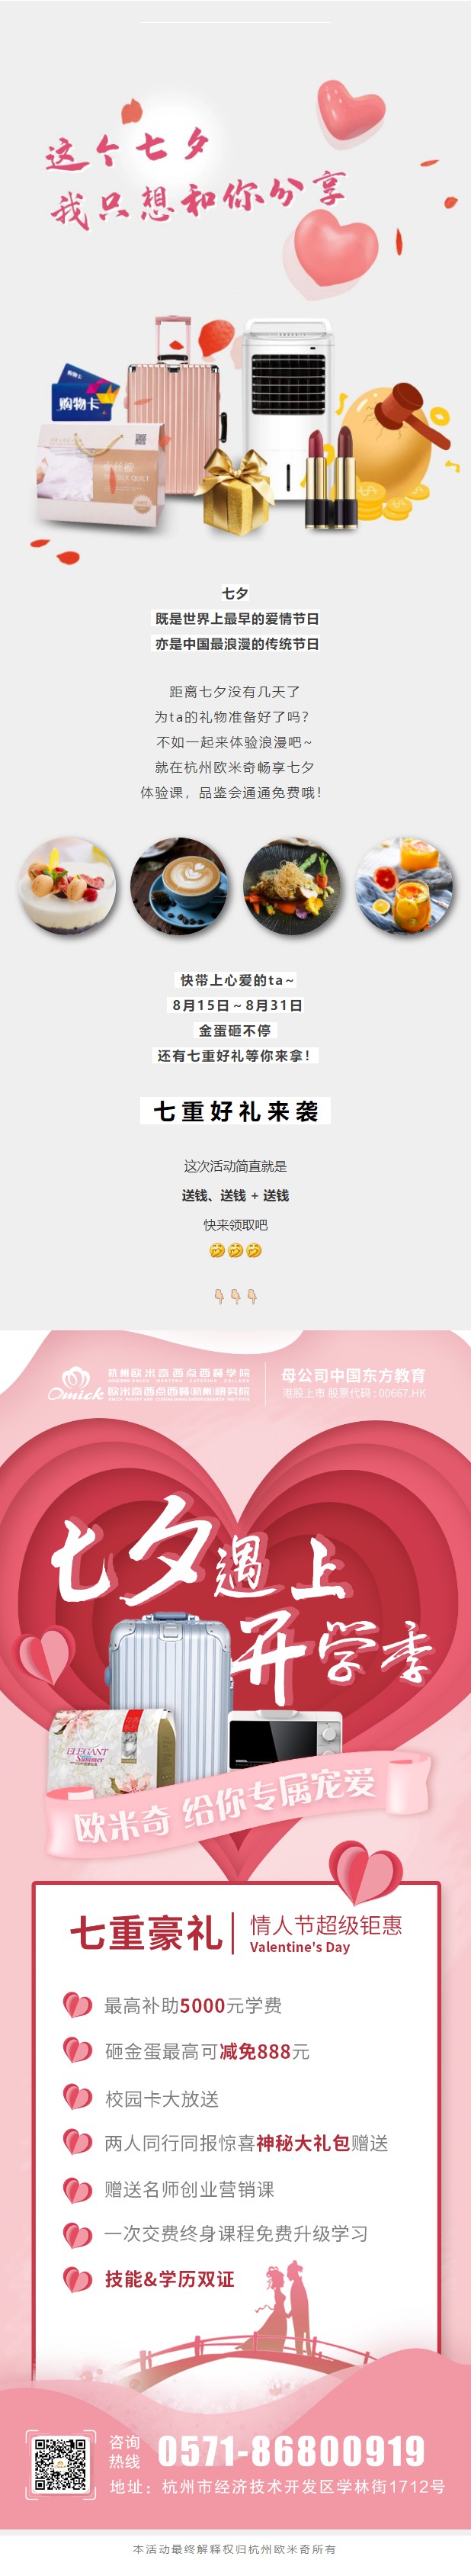 杭州欧米奇西点西餐学院 - 微信公众平台(1).jpg